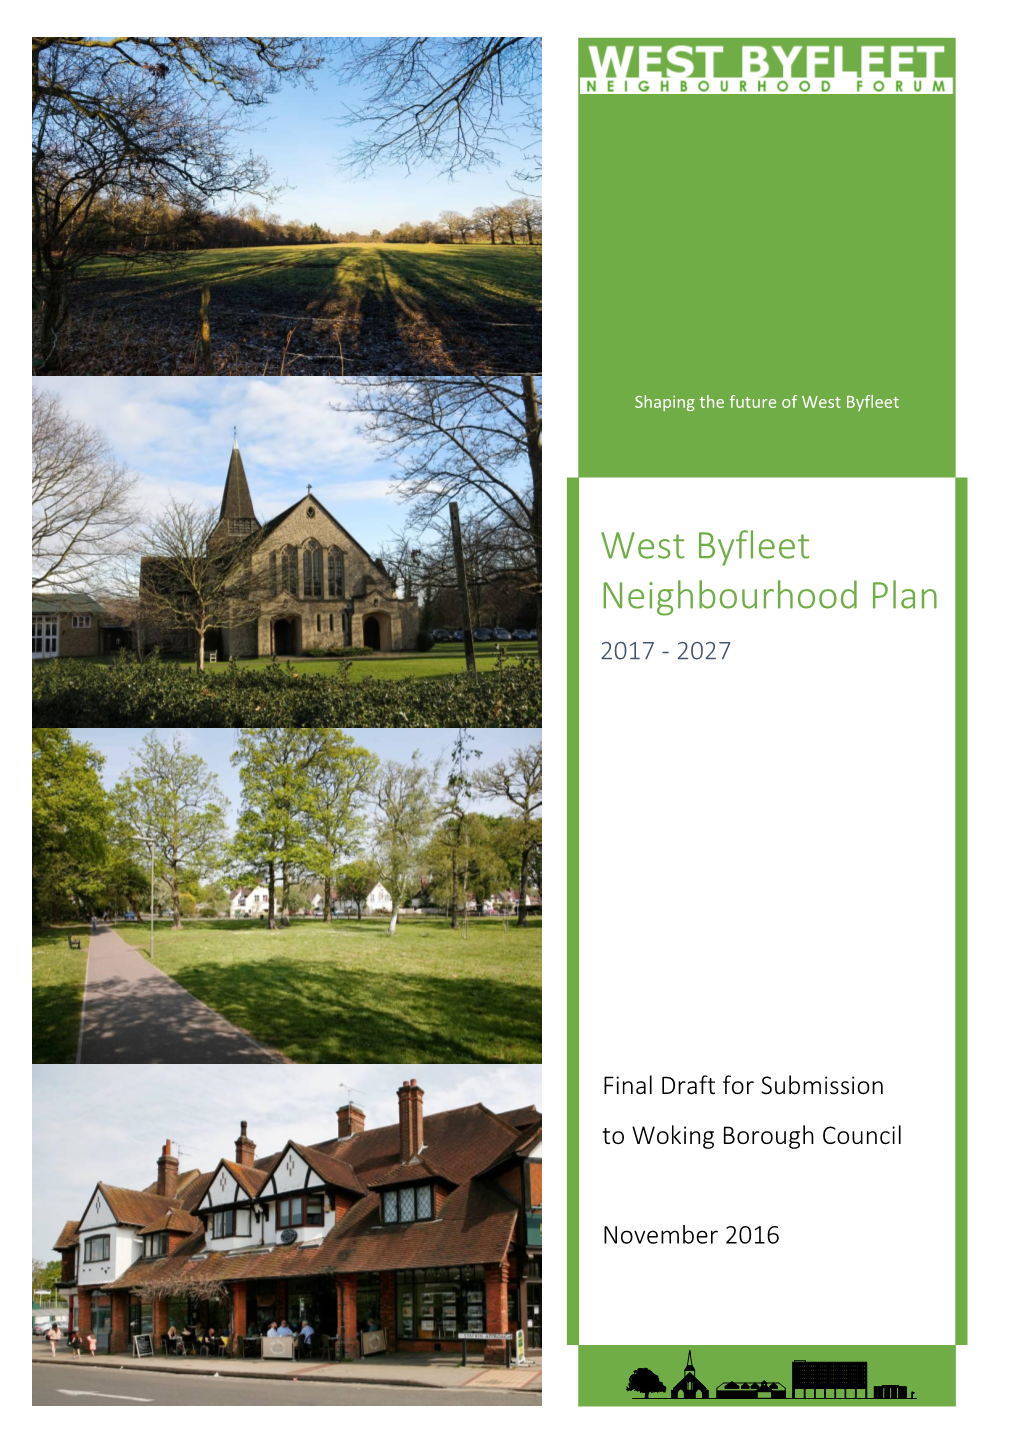 The West Byfleet Neighbourhood Plan 2017-2027